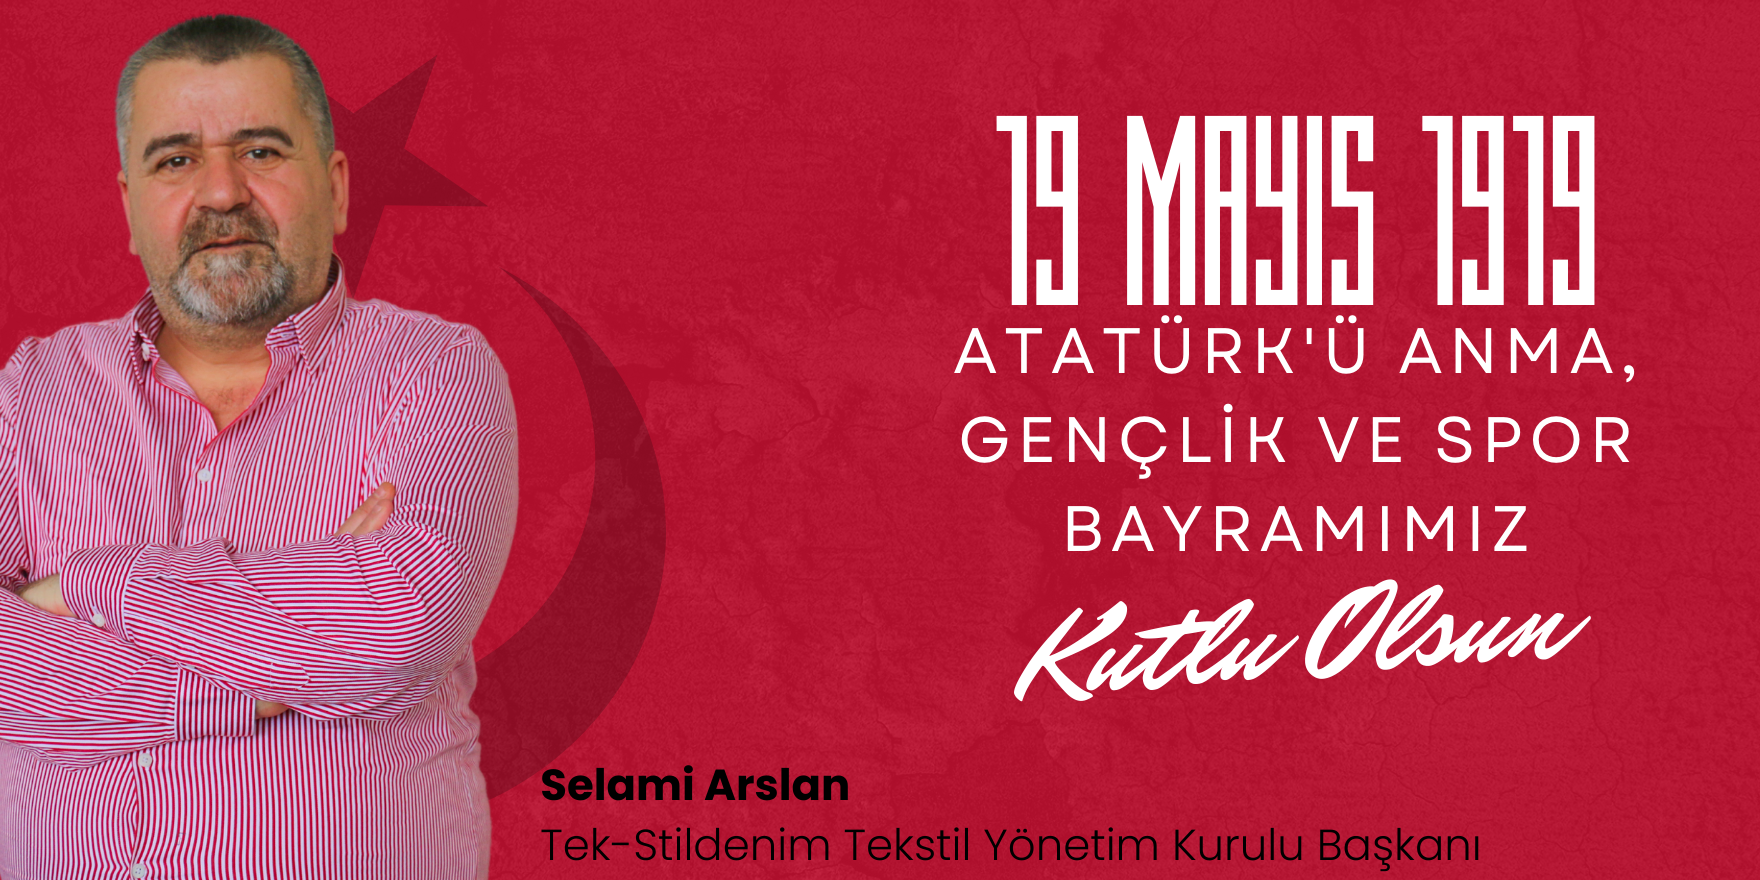 Selami Arslan 19 Mayıs Atatürk'ü Anma, Gençlik ve Spor Bayramı Mesajı